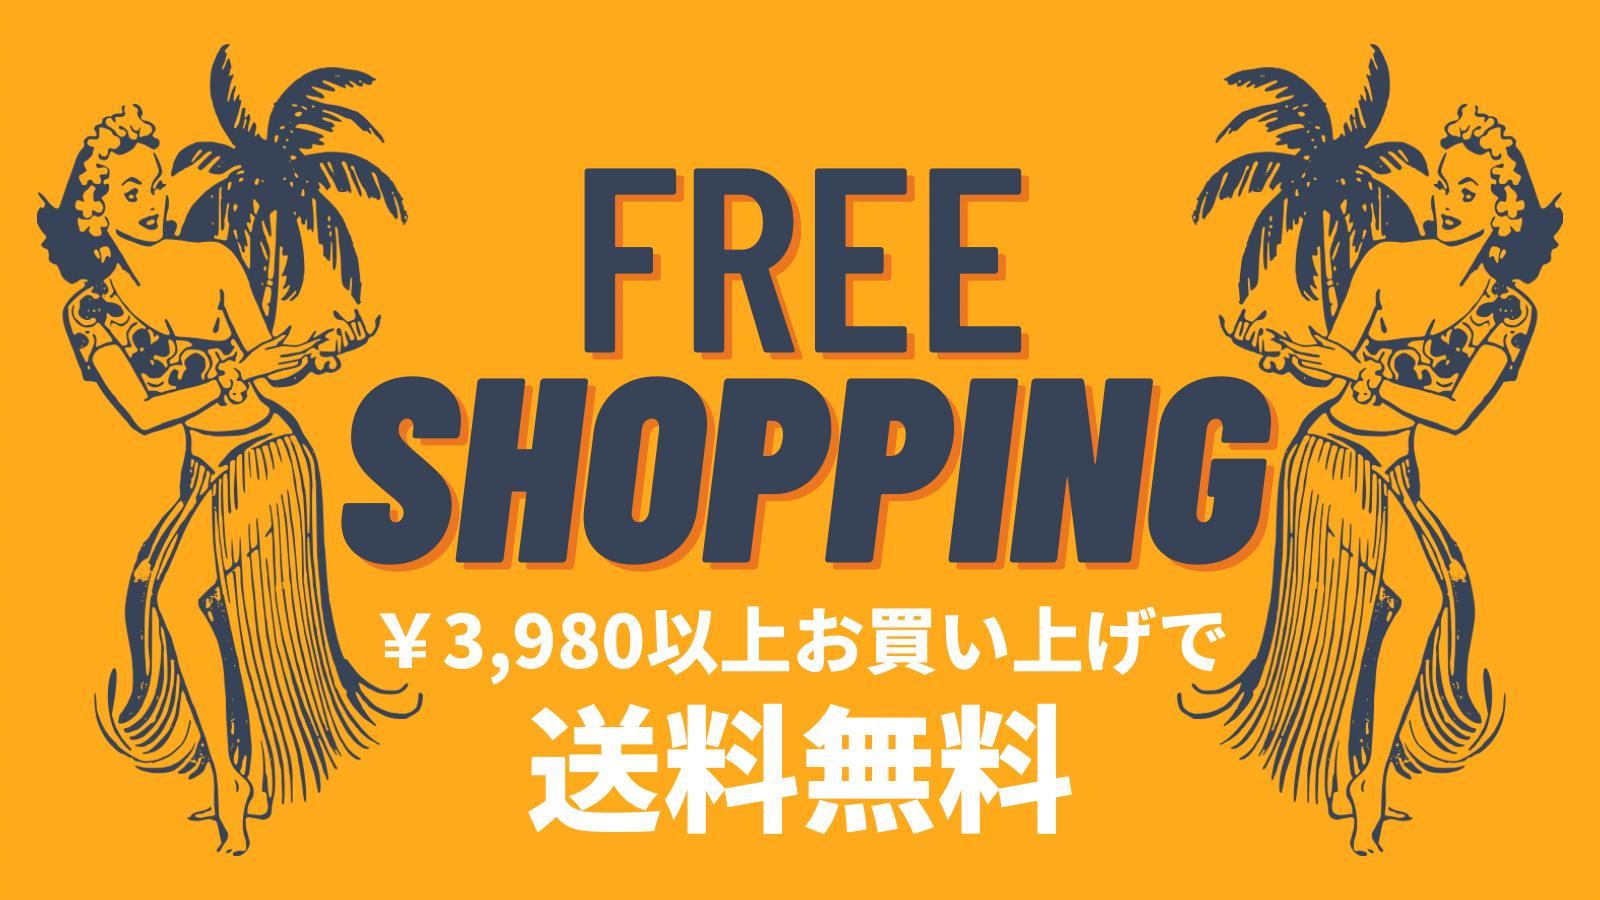 当店¥3,980以上お買い上げで全国一律送料無料